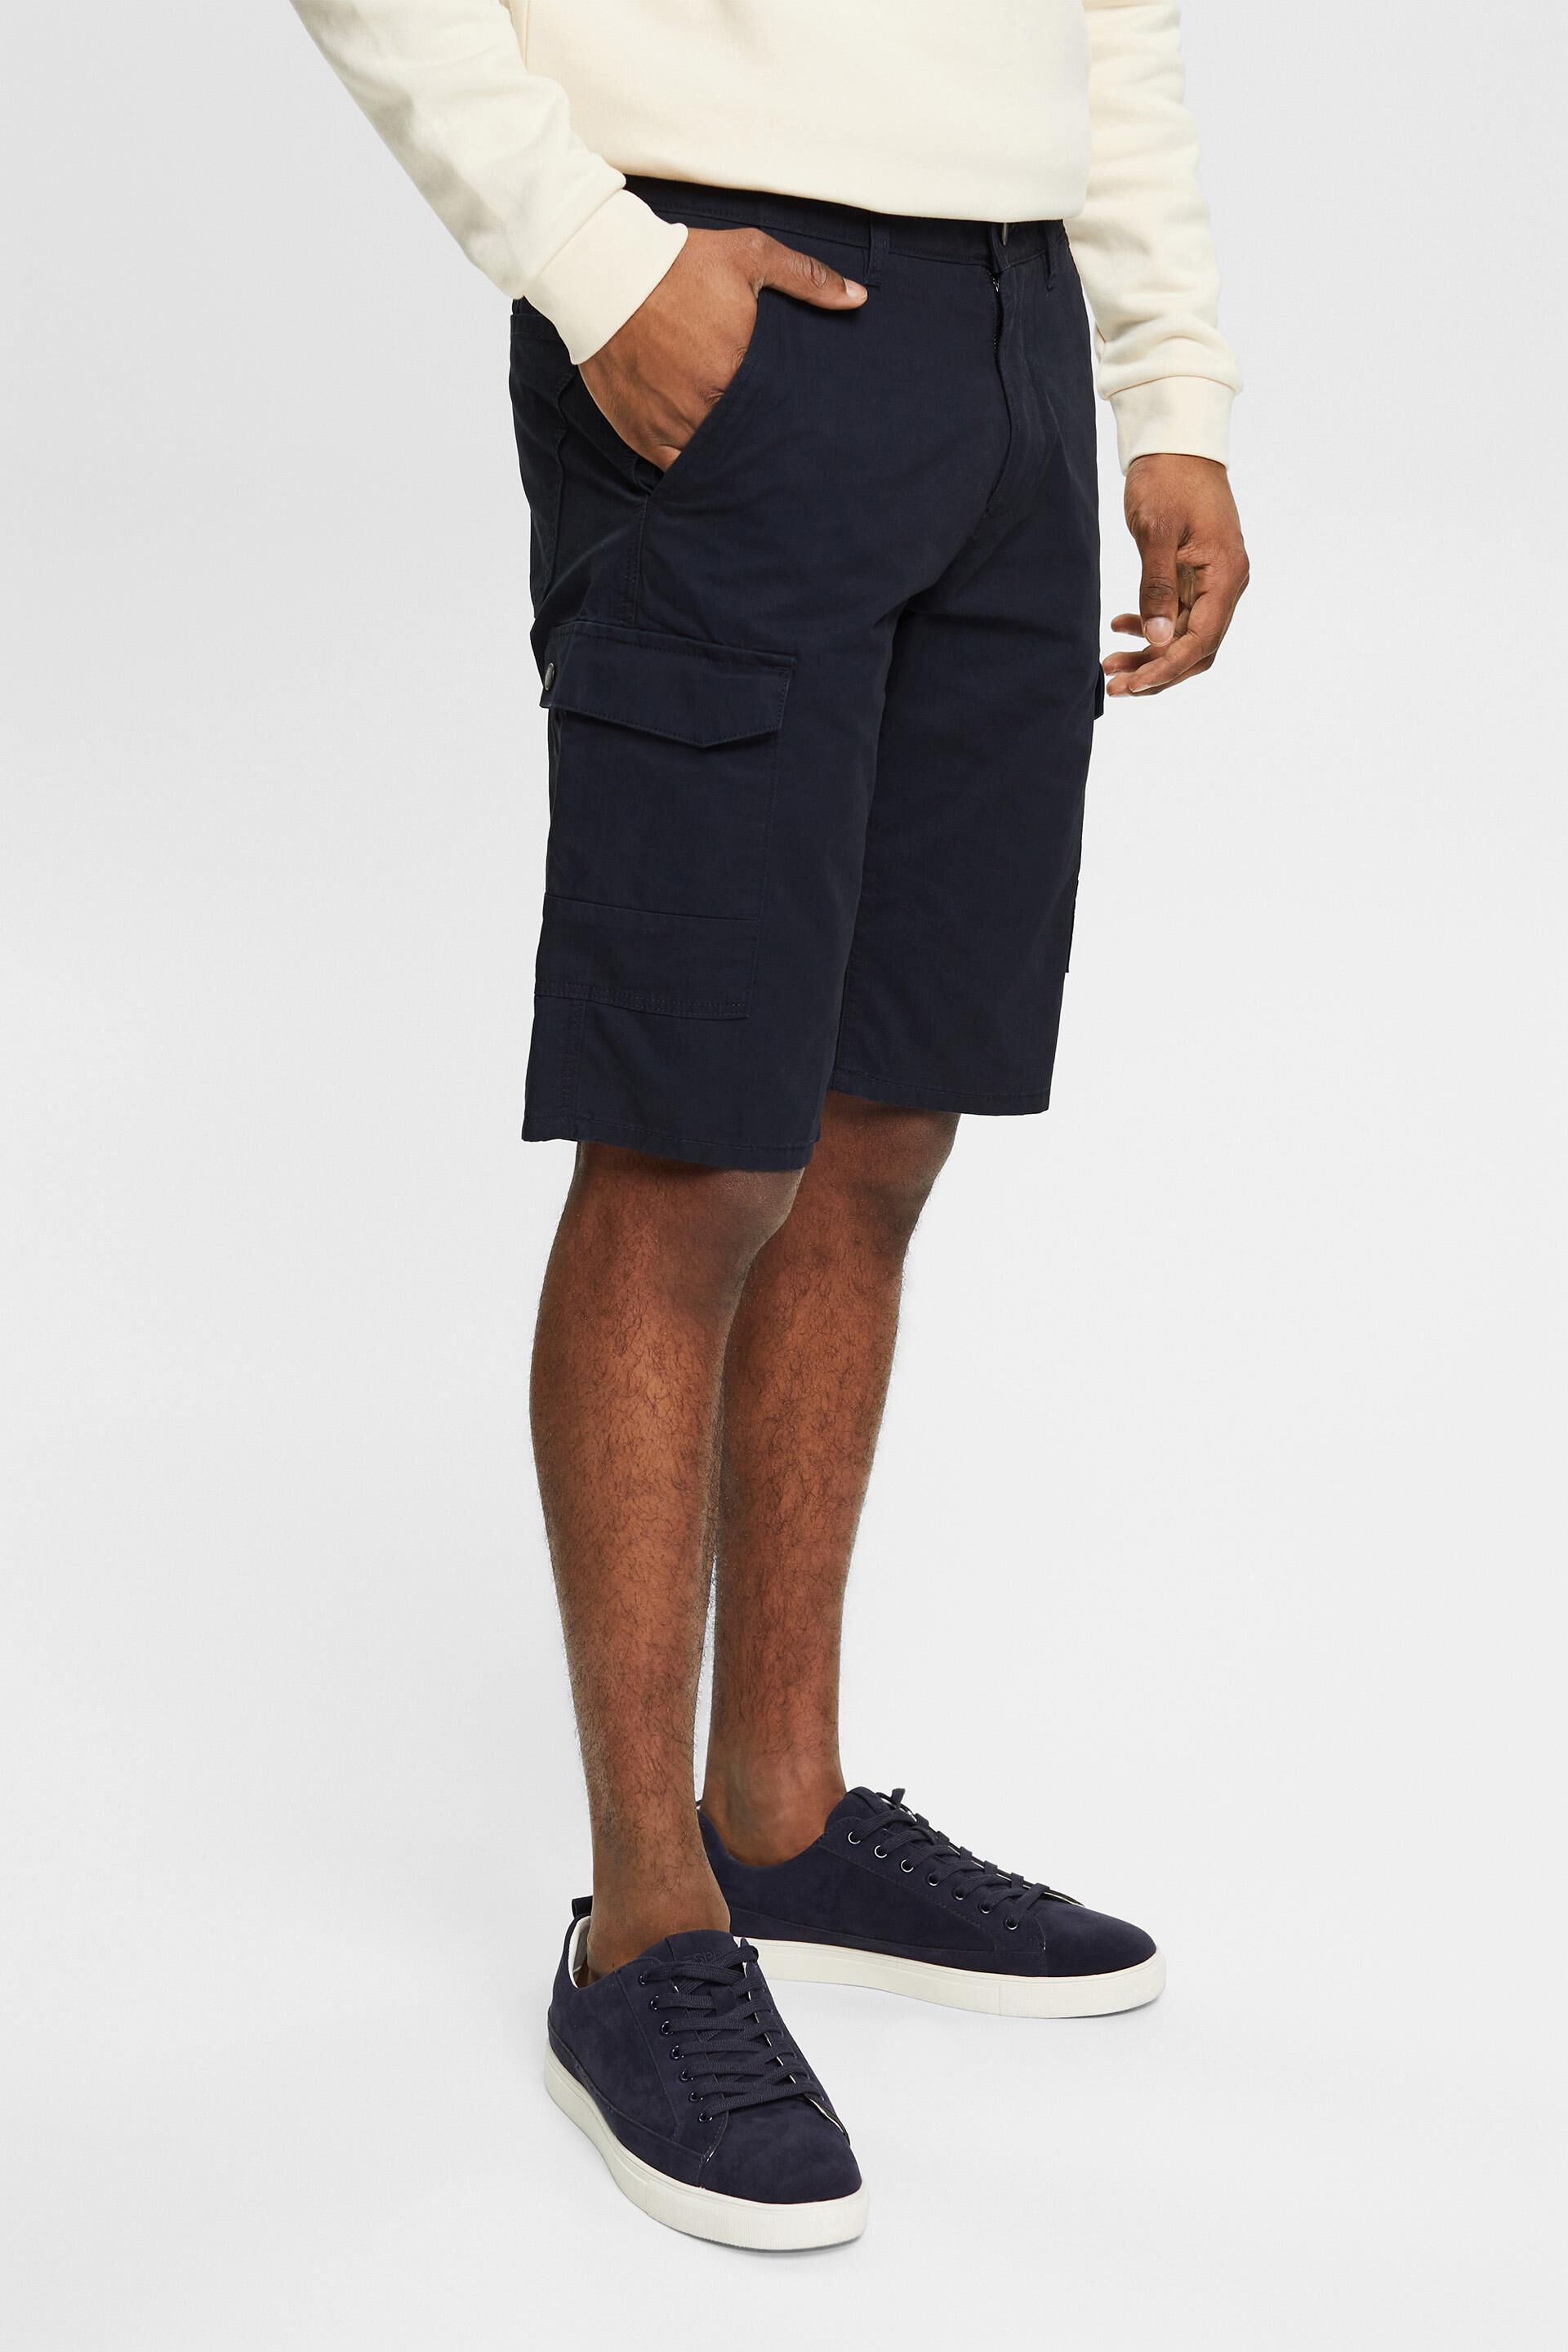 Moschino Baumwolle Andere materialien shorts in Blau für Herren Herren Bekleidung Kurze Hosen Bermudas 